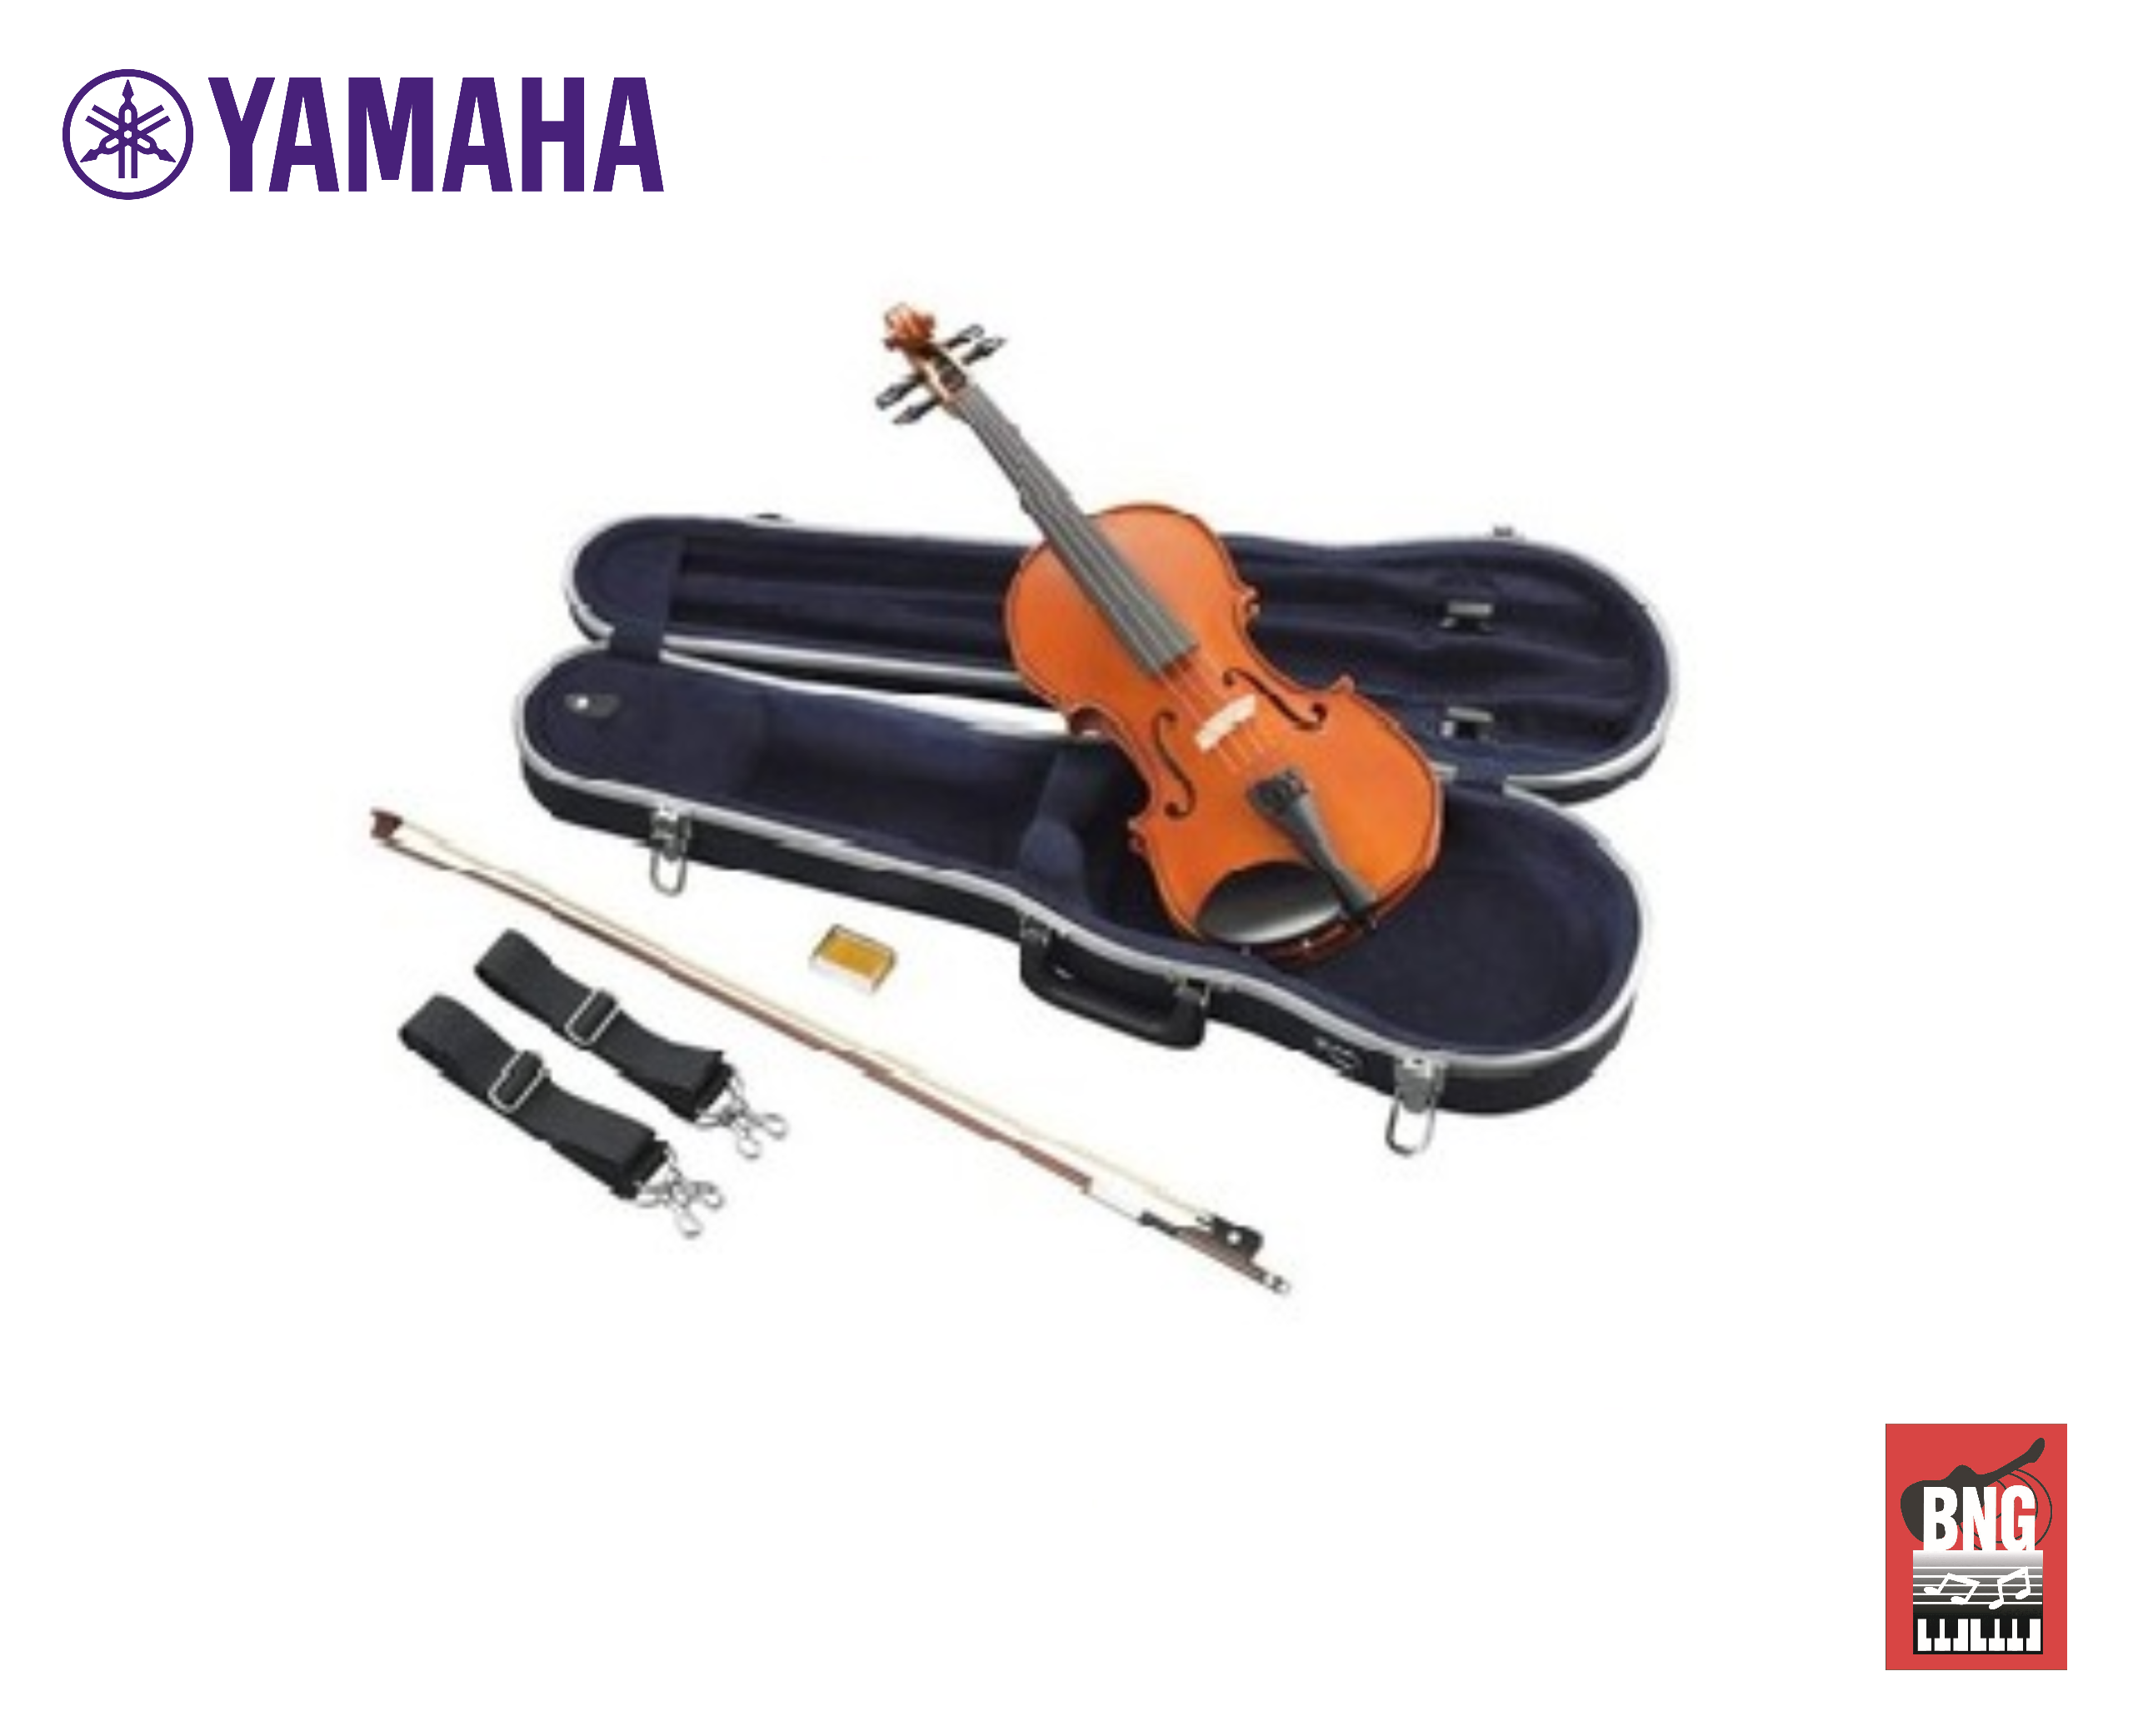 Synwin SV1005 ไวโอลิน Violin แบรนด์ในเครื่อยามาฮ่า จากประเทศสิงคโปร ขนาด 1/4 มาราฐาน เหมาะสำหรับผู้เริ่มเล่นไวโอลิน